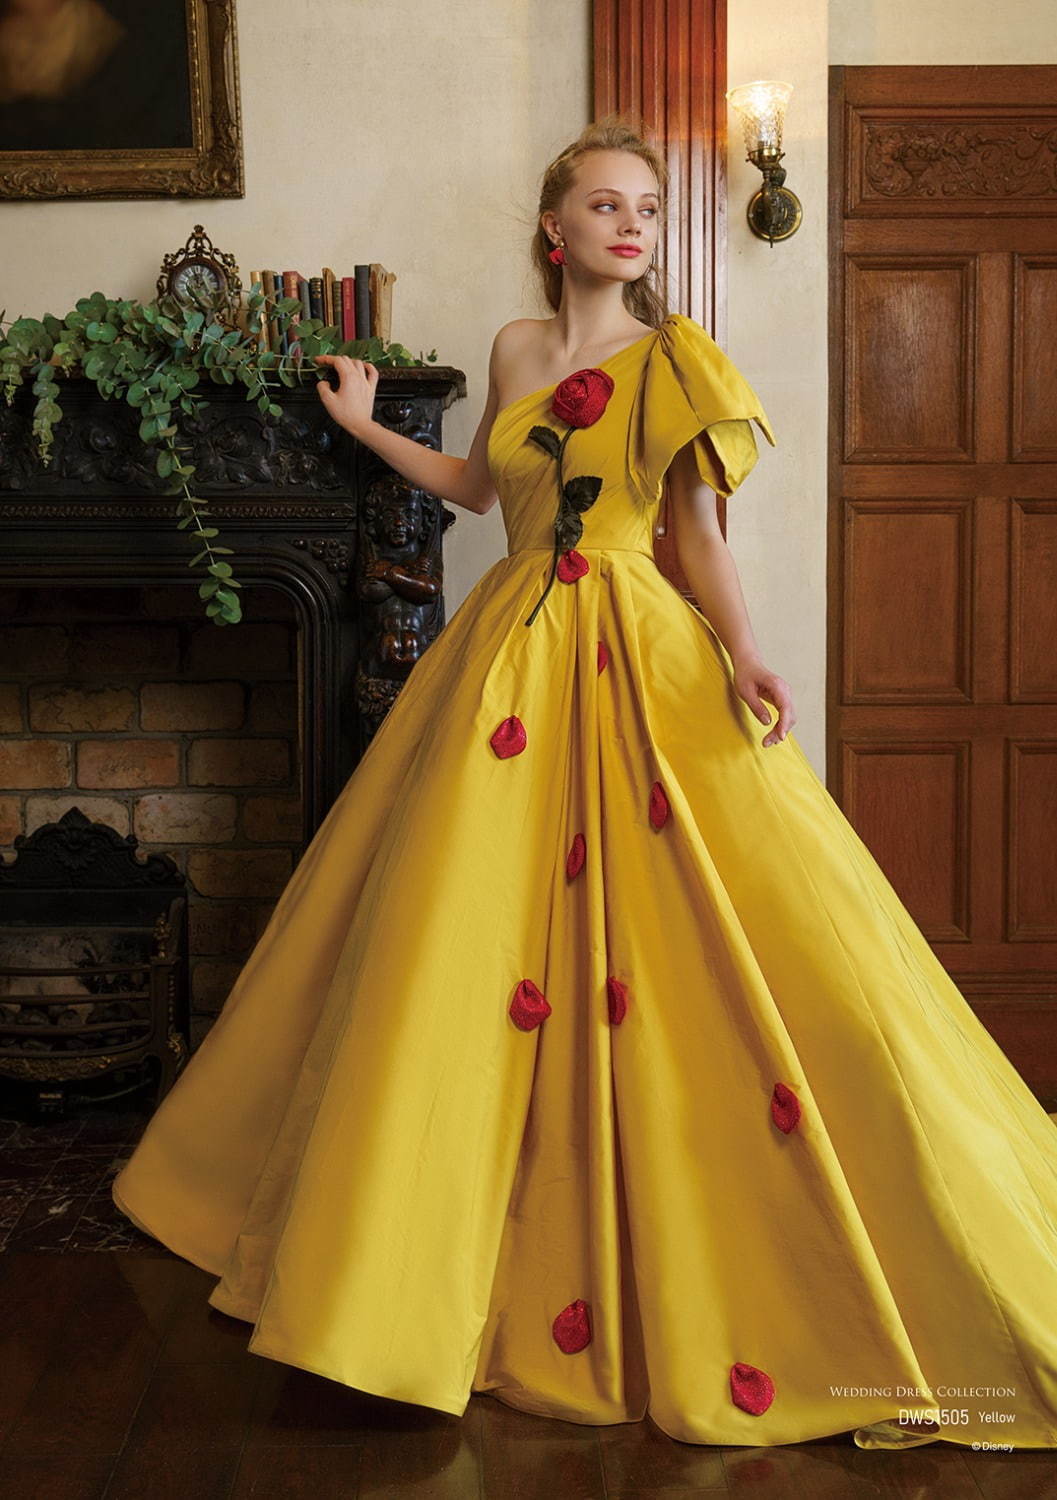 ディズニープリンセスの新作ウエディングドレス シンデレラや白雪姫モチーフ 三浦大地がデザイン ファッションプレス